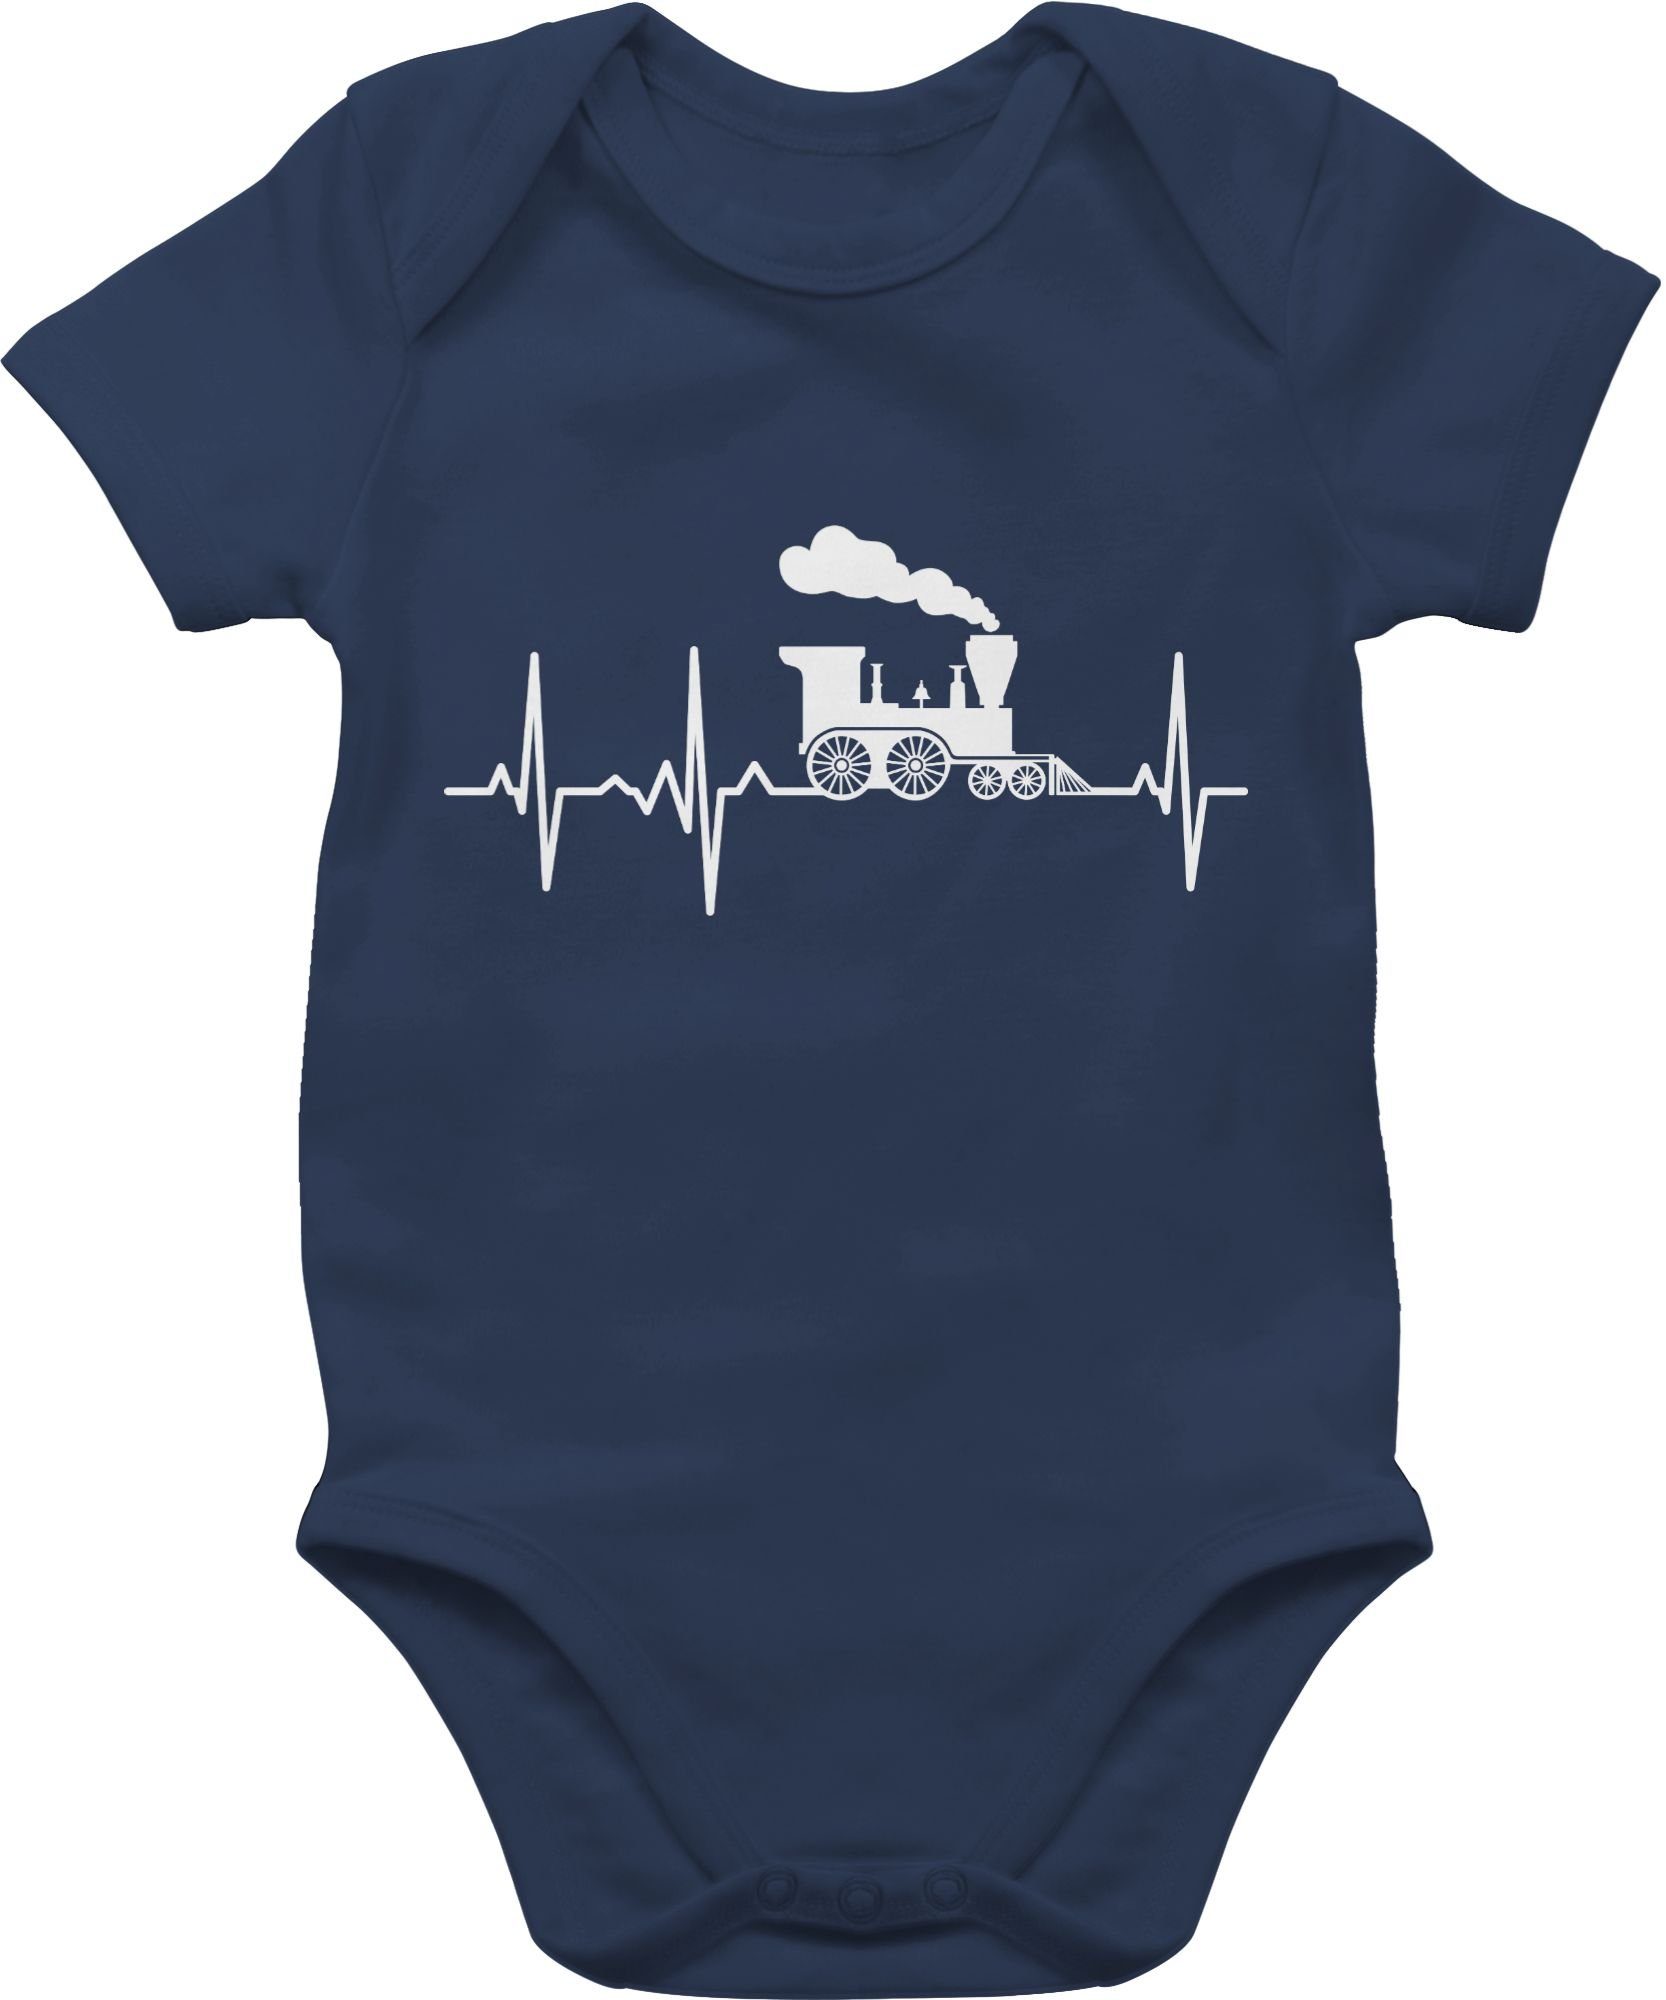 Traktor Dampflok Blau Herzschlag Baby Navy Bagger 1 und Shirtracer weiß Co. Shirtbody